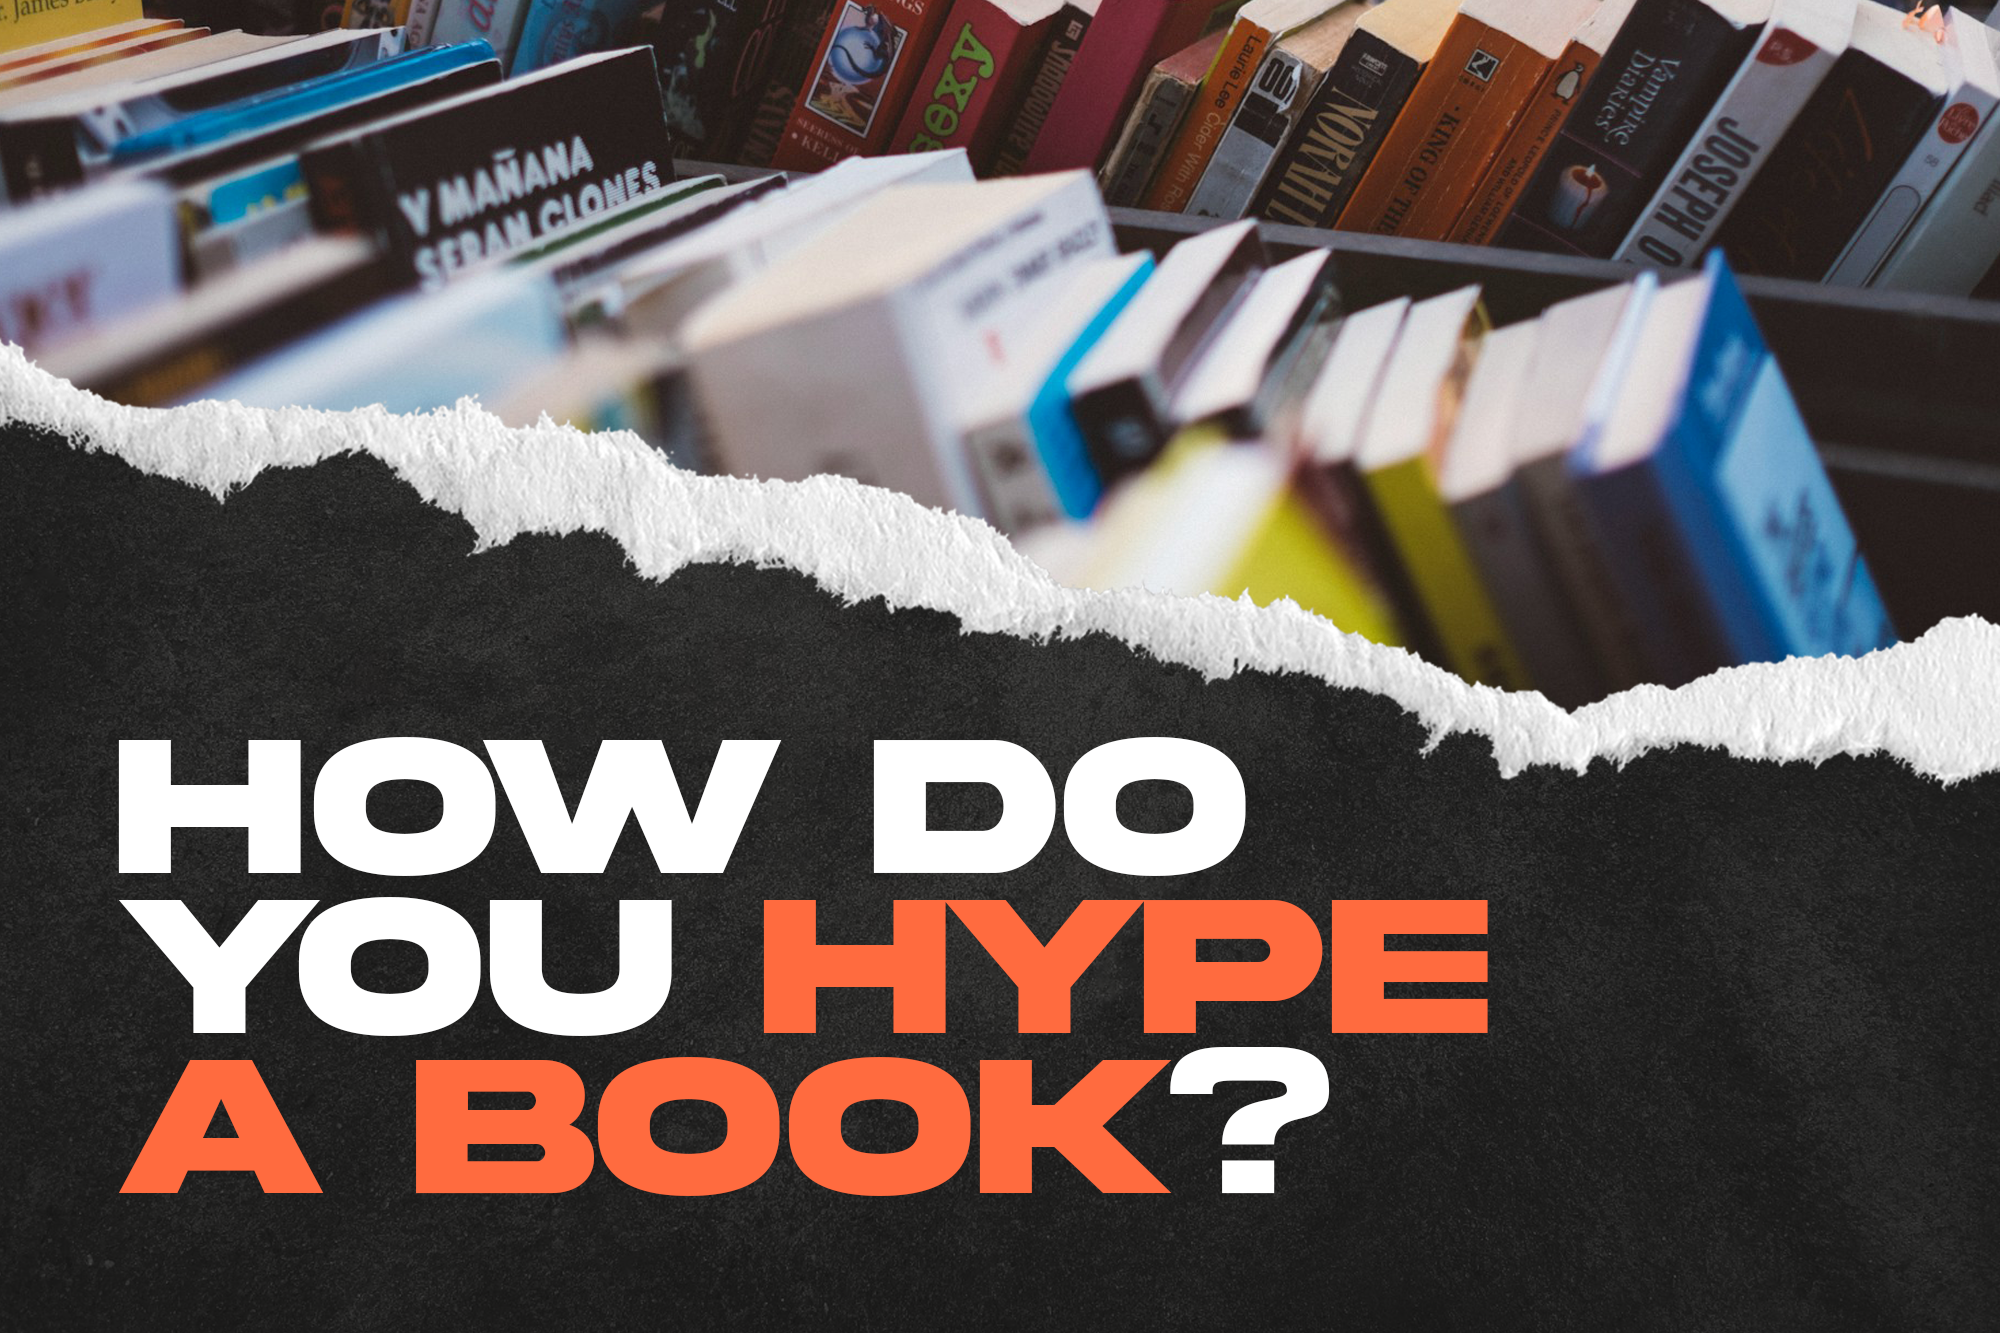 How do you hype a book